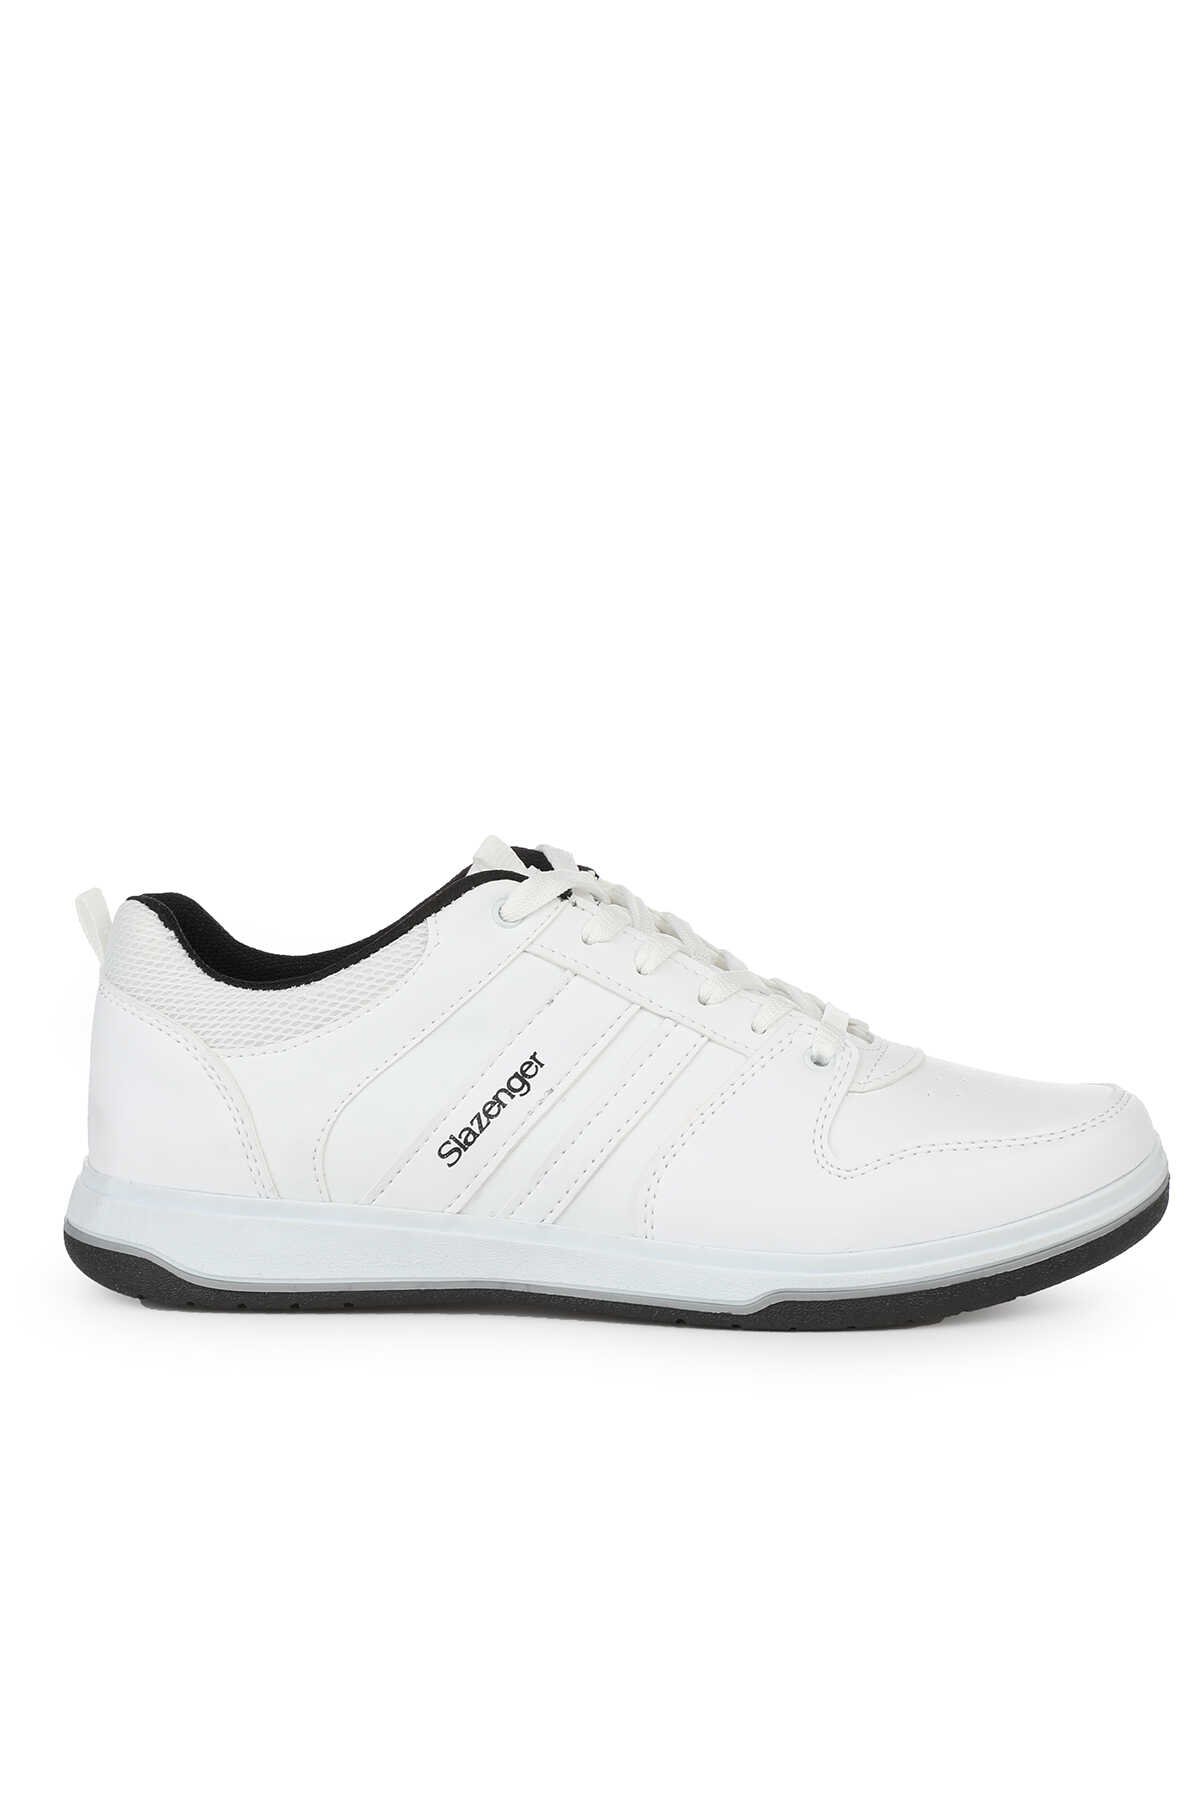 Slazenger - Slazenger ALISHA I Sneaker Erkek Ayakkabı Beyaz